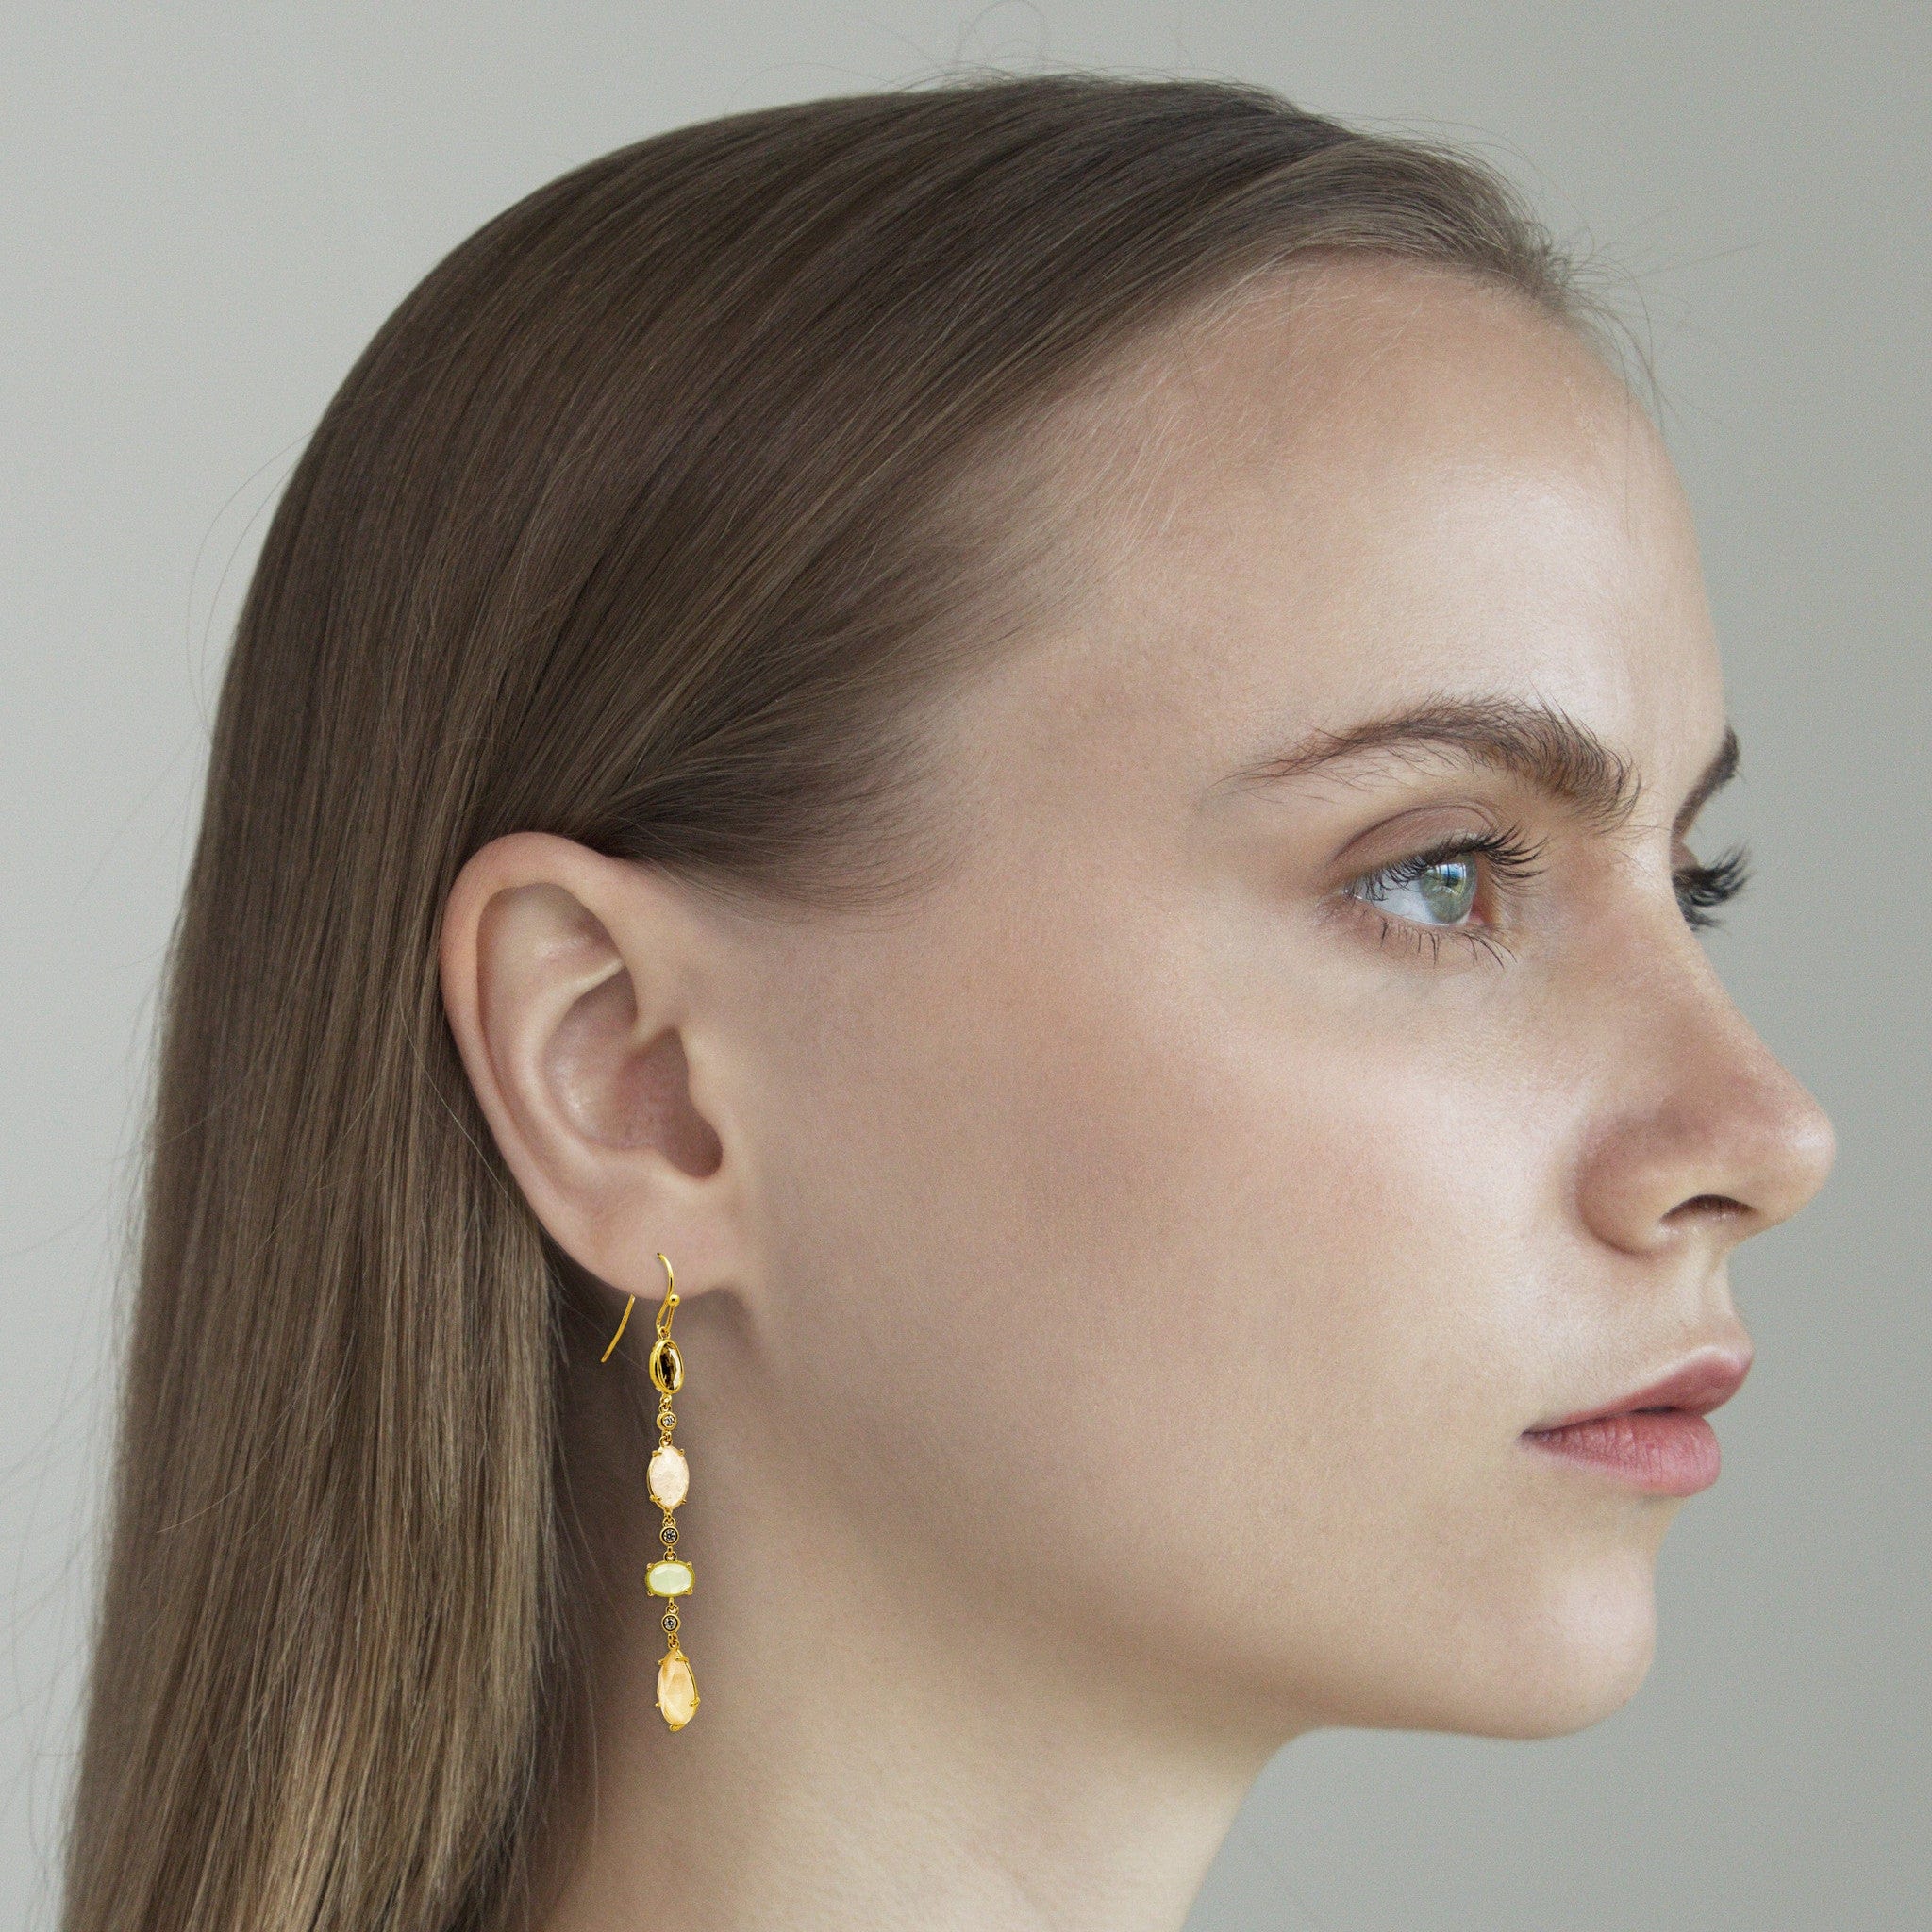 TAI JEWELRY Earrings Gold 4 Stone Linear Drop Earring